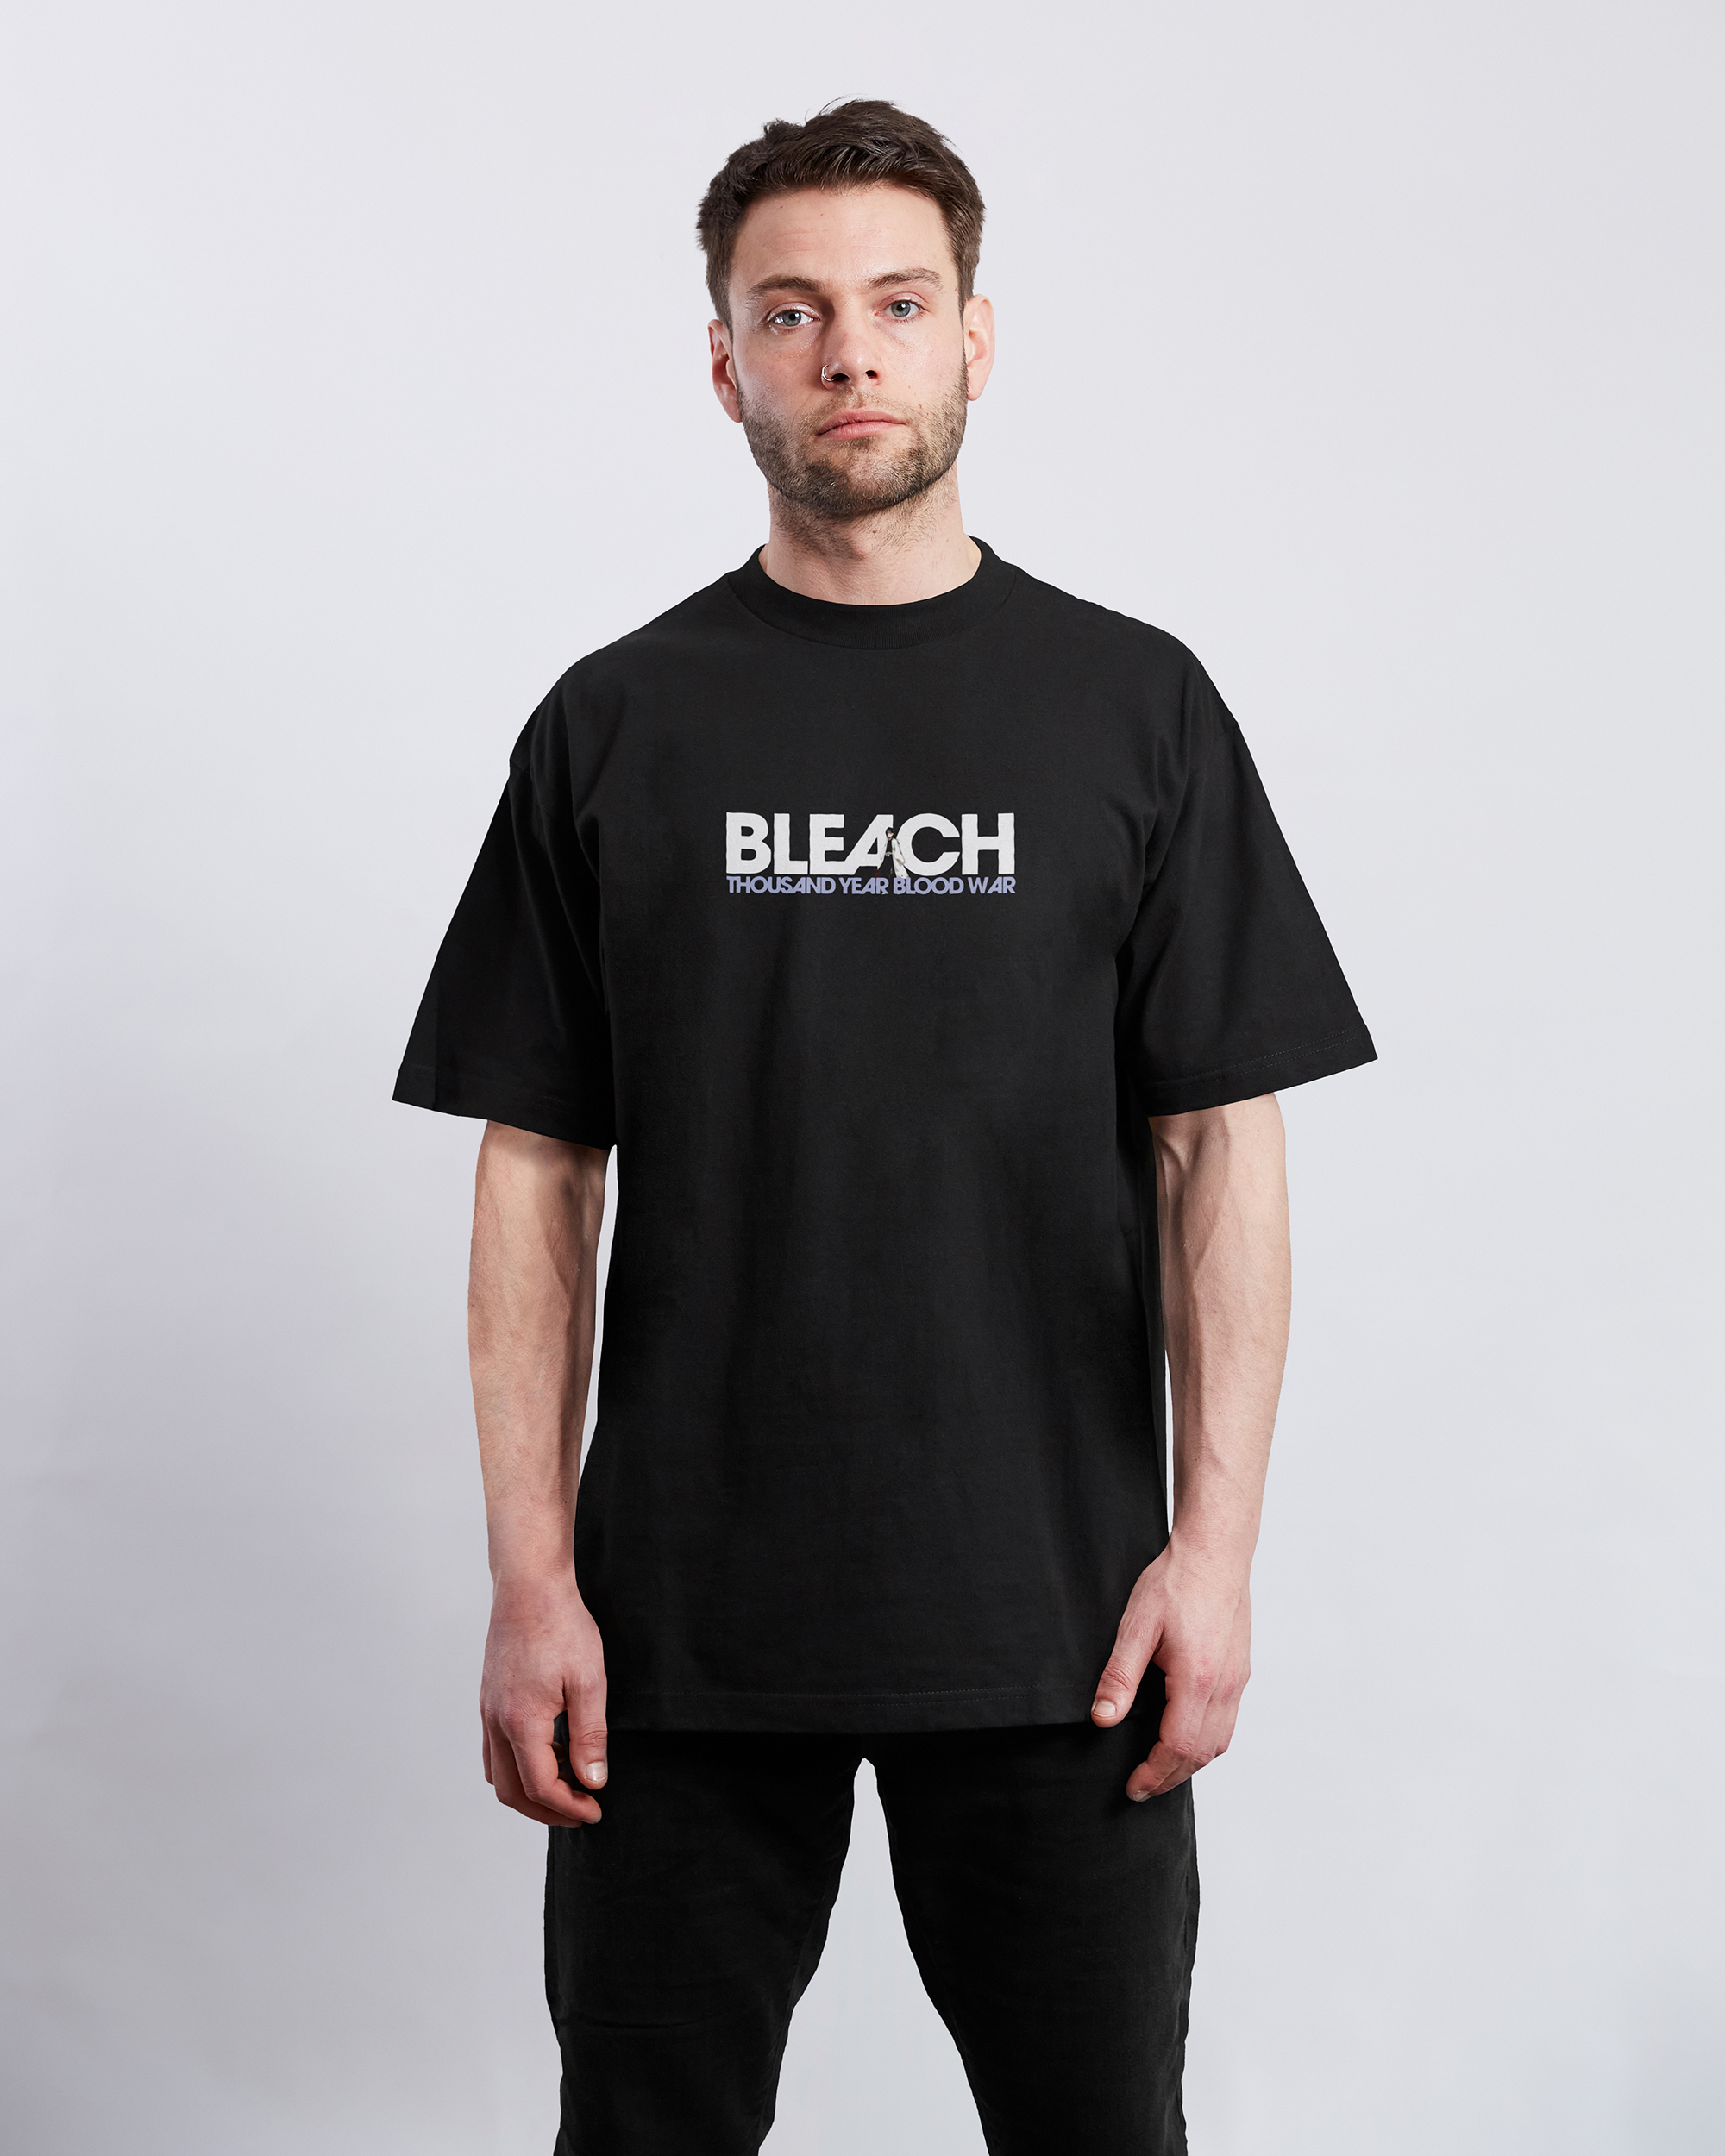 Rukia Kuchiki Bleach | T-Shirt TYBW